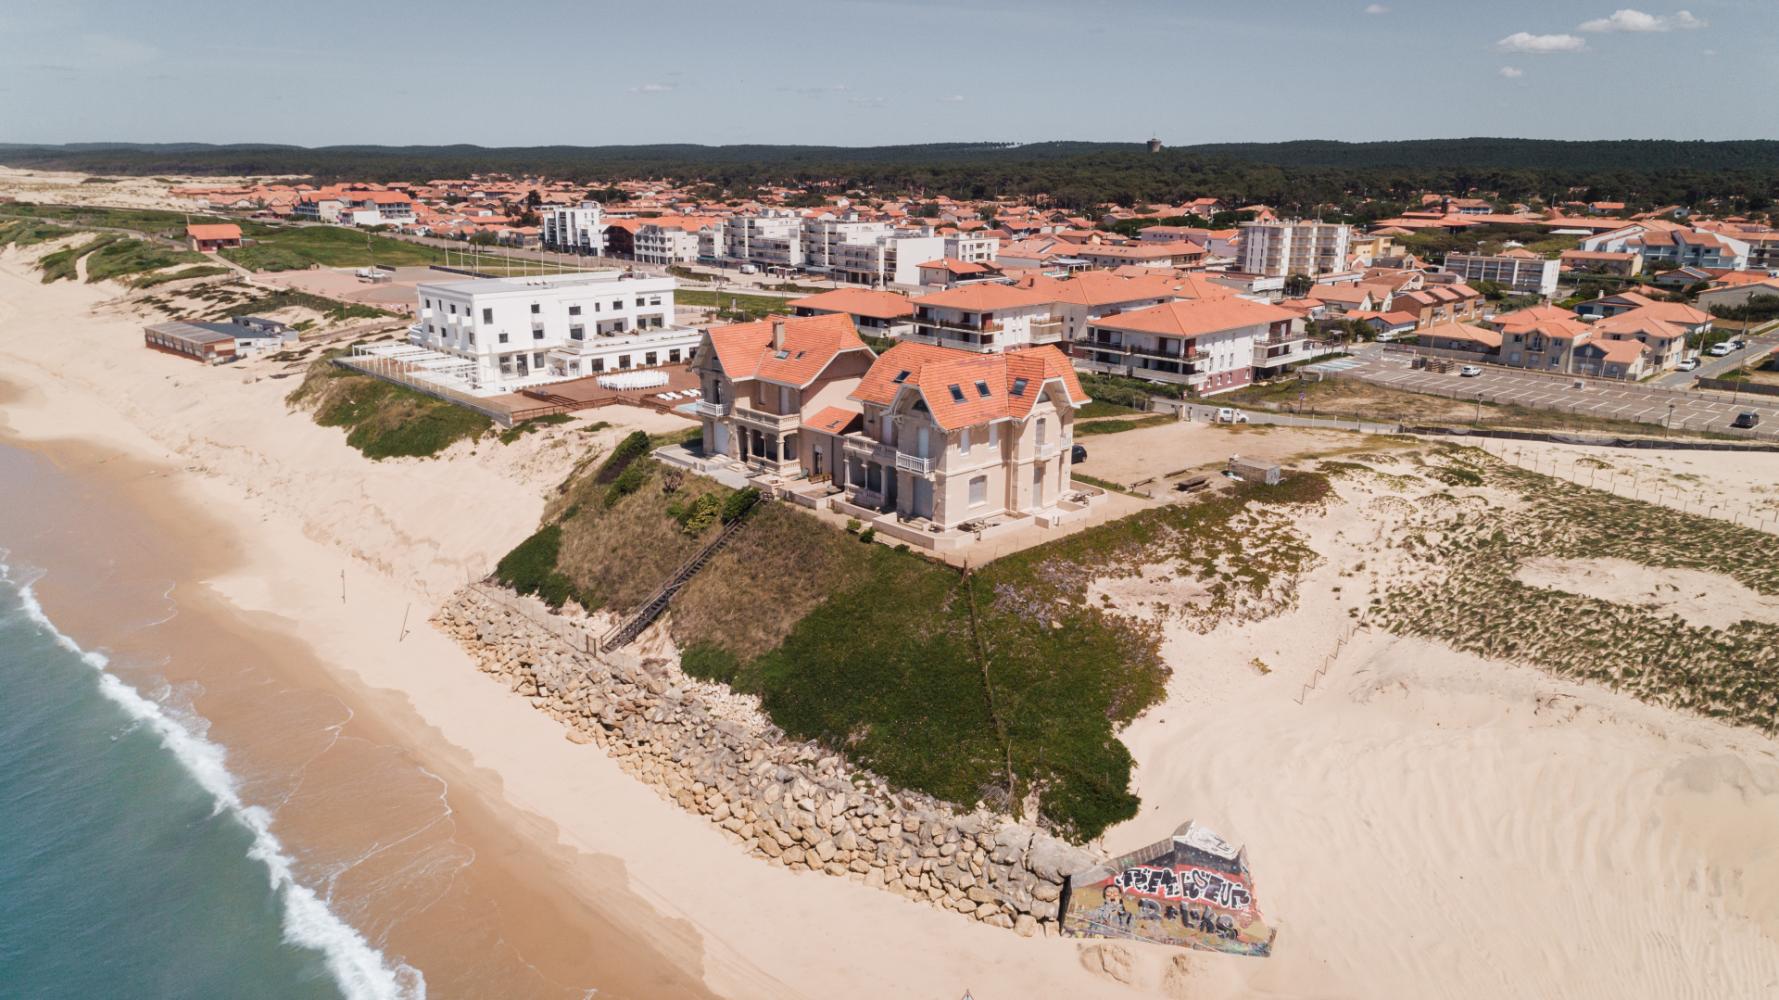 Les villas jumelles et le grand hôtel de la plage en mai 2020